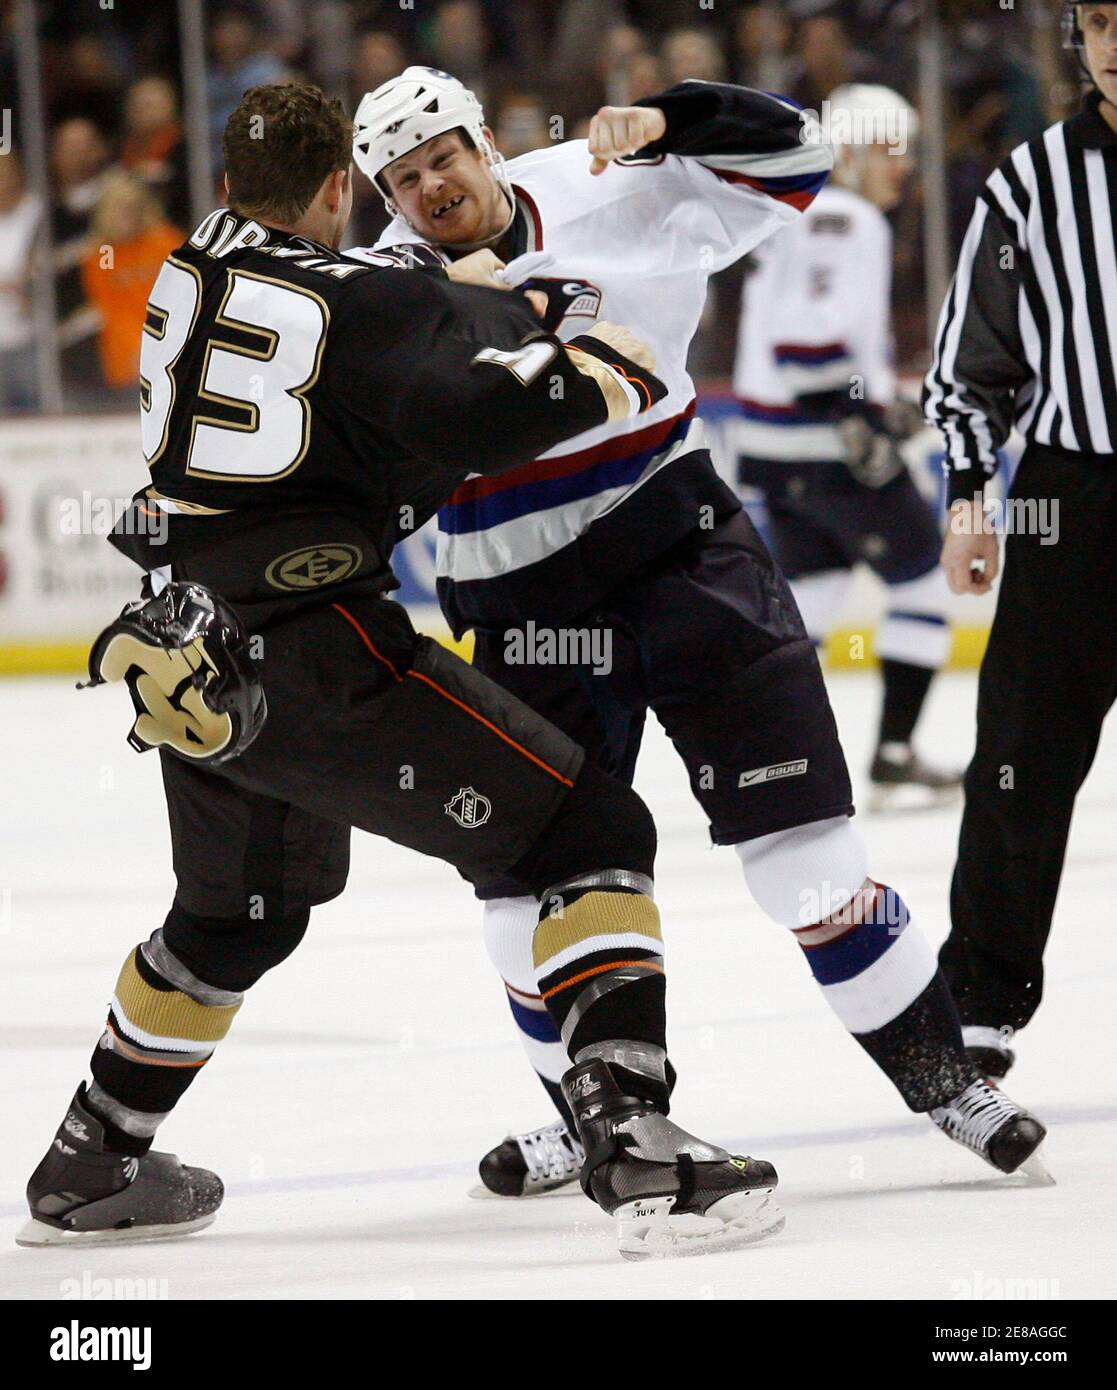 Anaheim Ducks' Joe DiPenta (L) bekommt in einem Kampf mit Vancouver Canucks' Jeff Cowan während der ersten Periode ihres NHL-Eishockey-Spiel in Anaheim 11. März 2007. REUTERS/Gus Ruelas (USA) Stockfoto